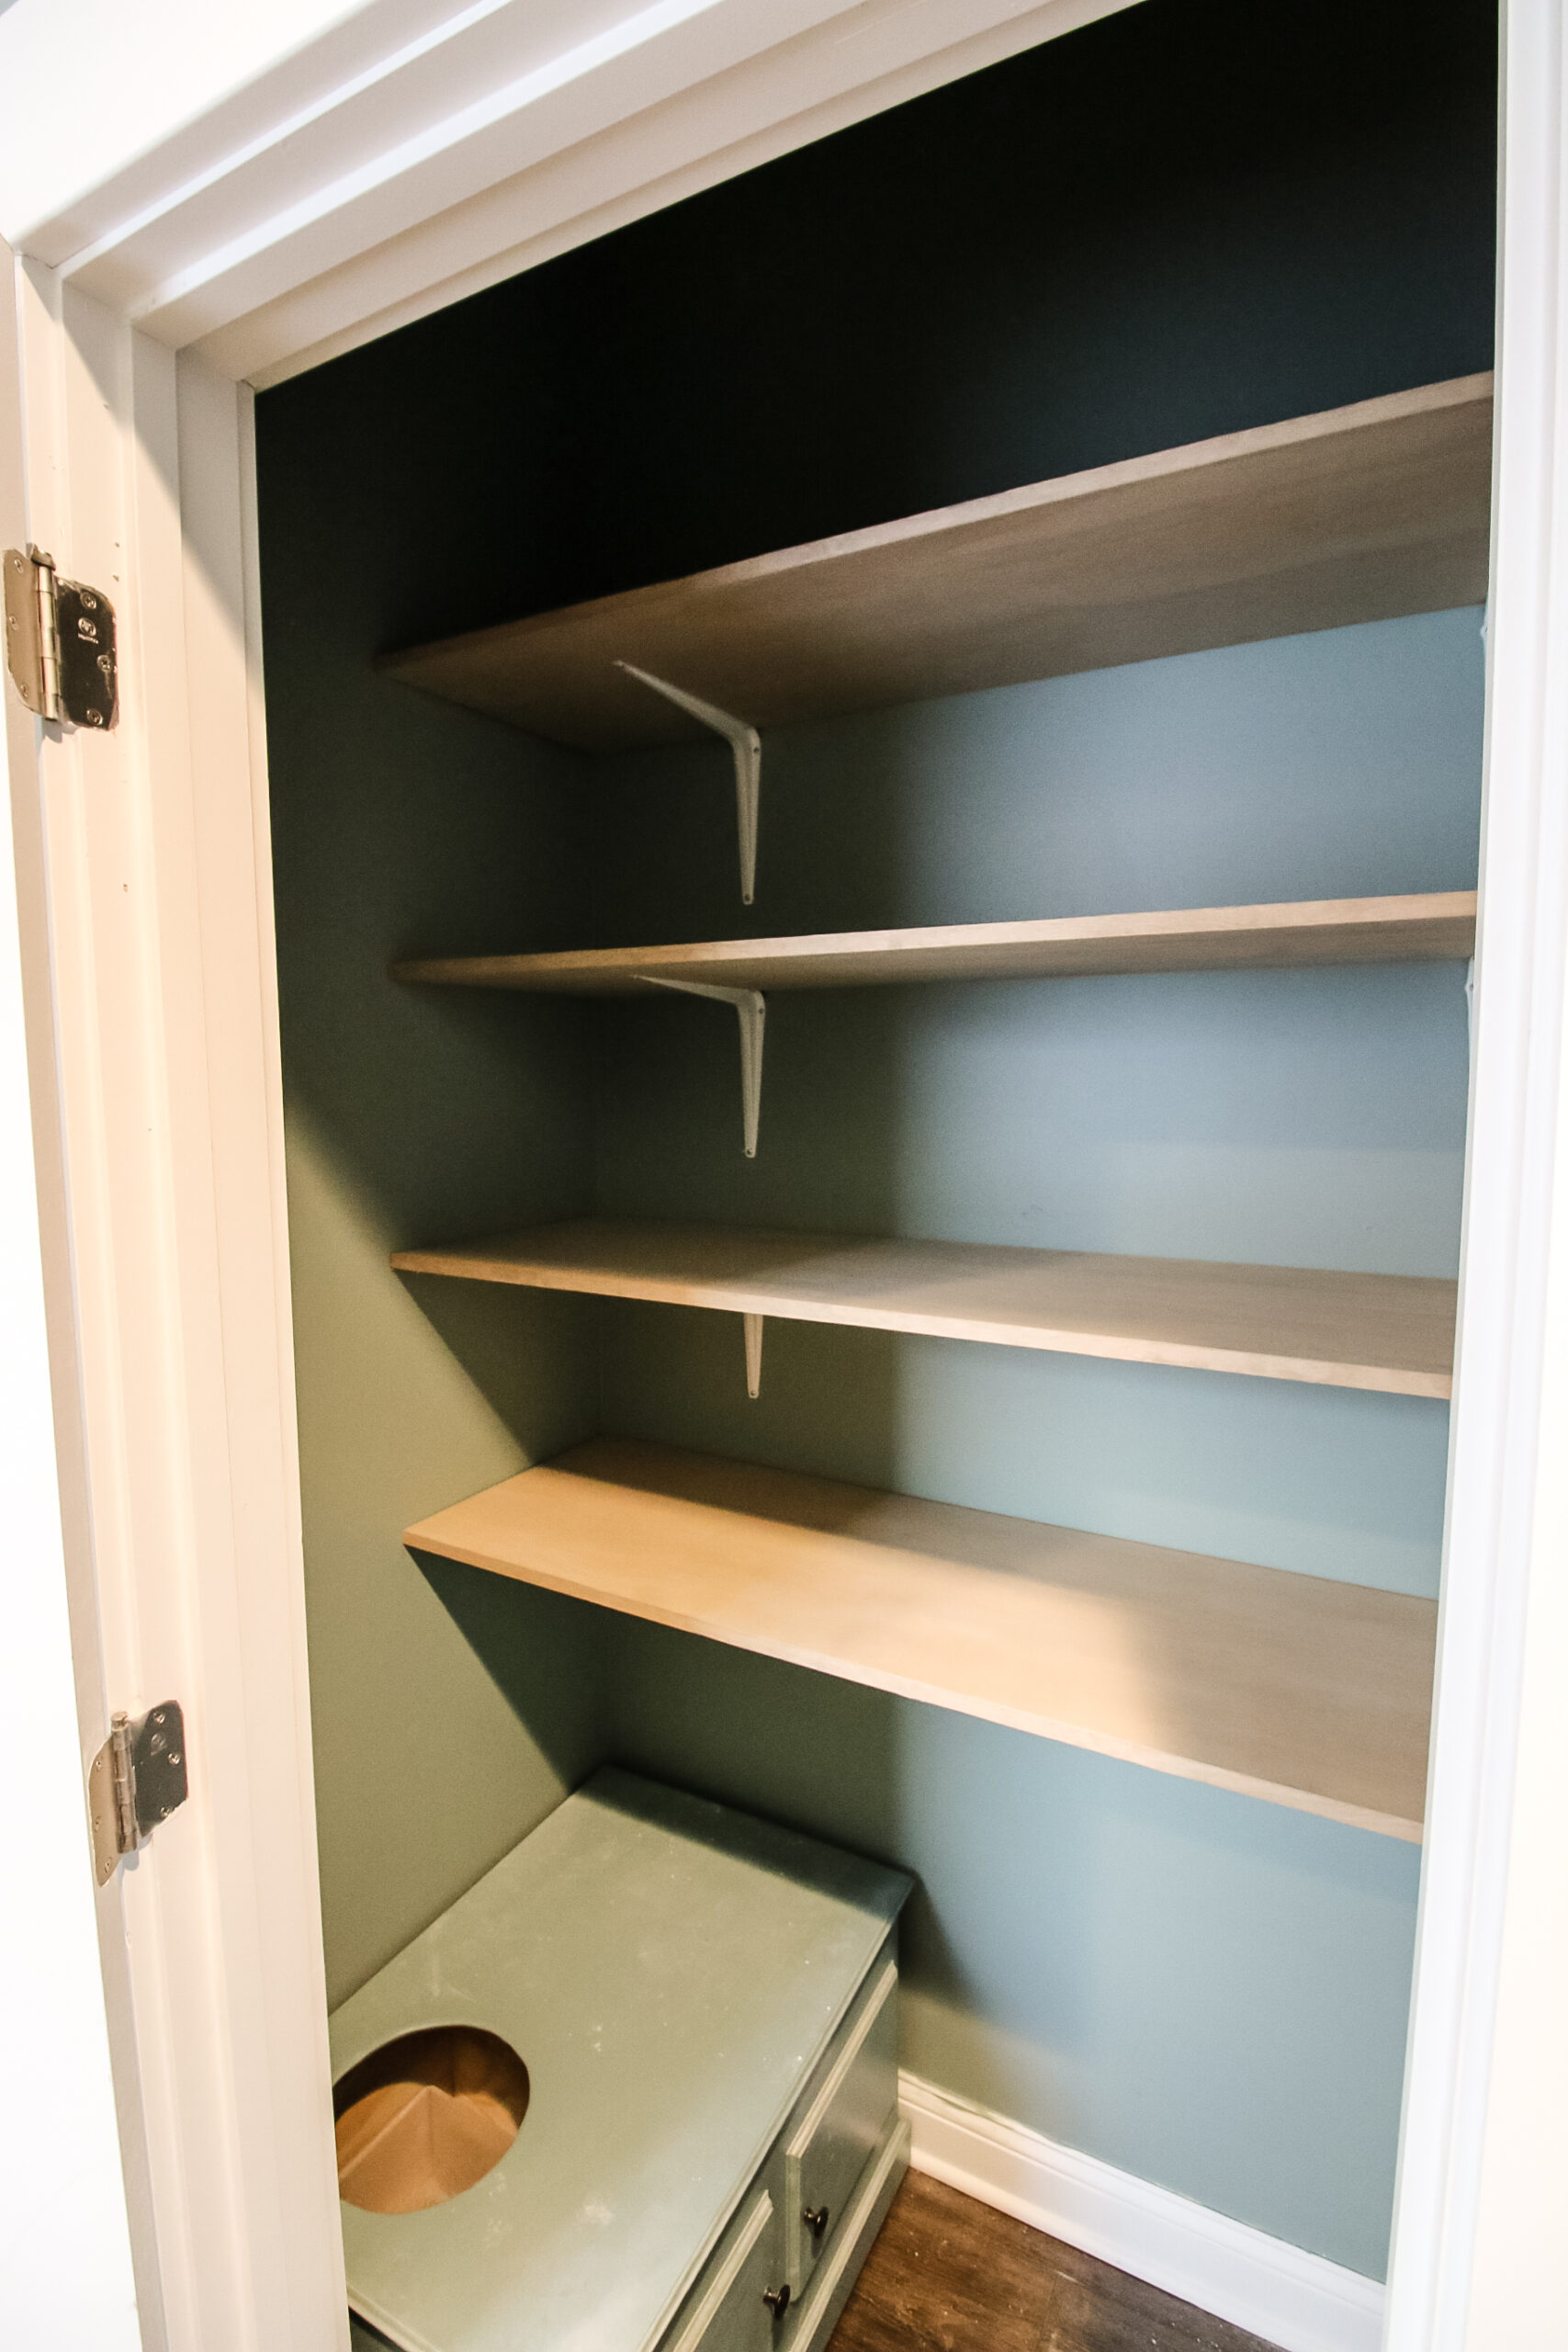 Install Simple Closet Shelves